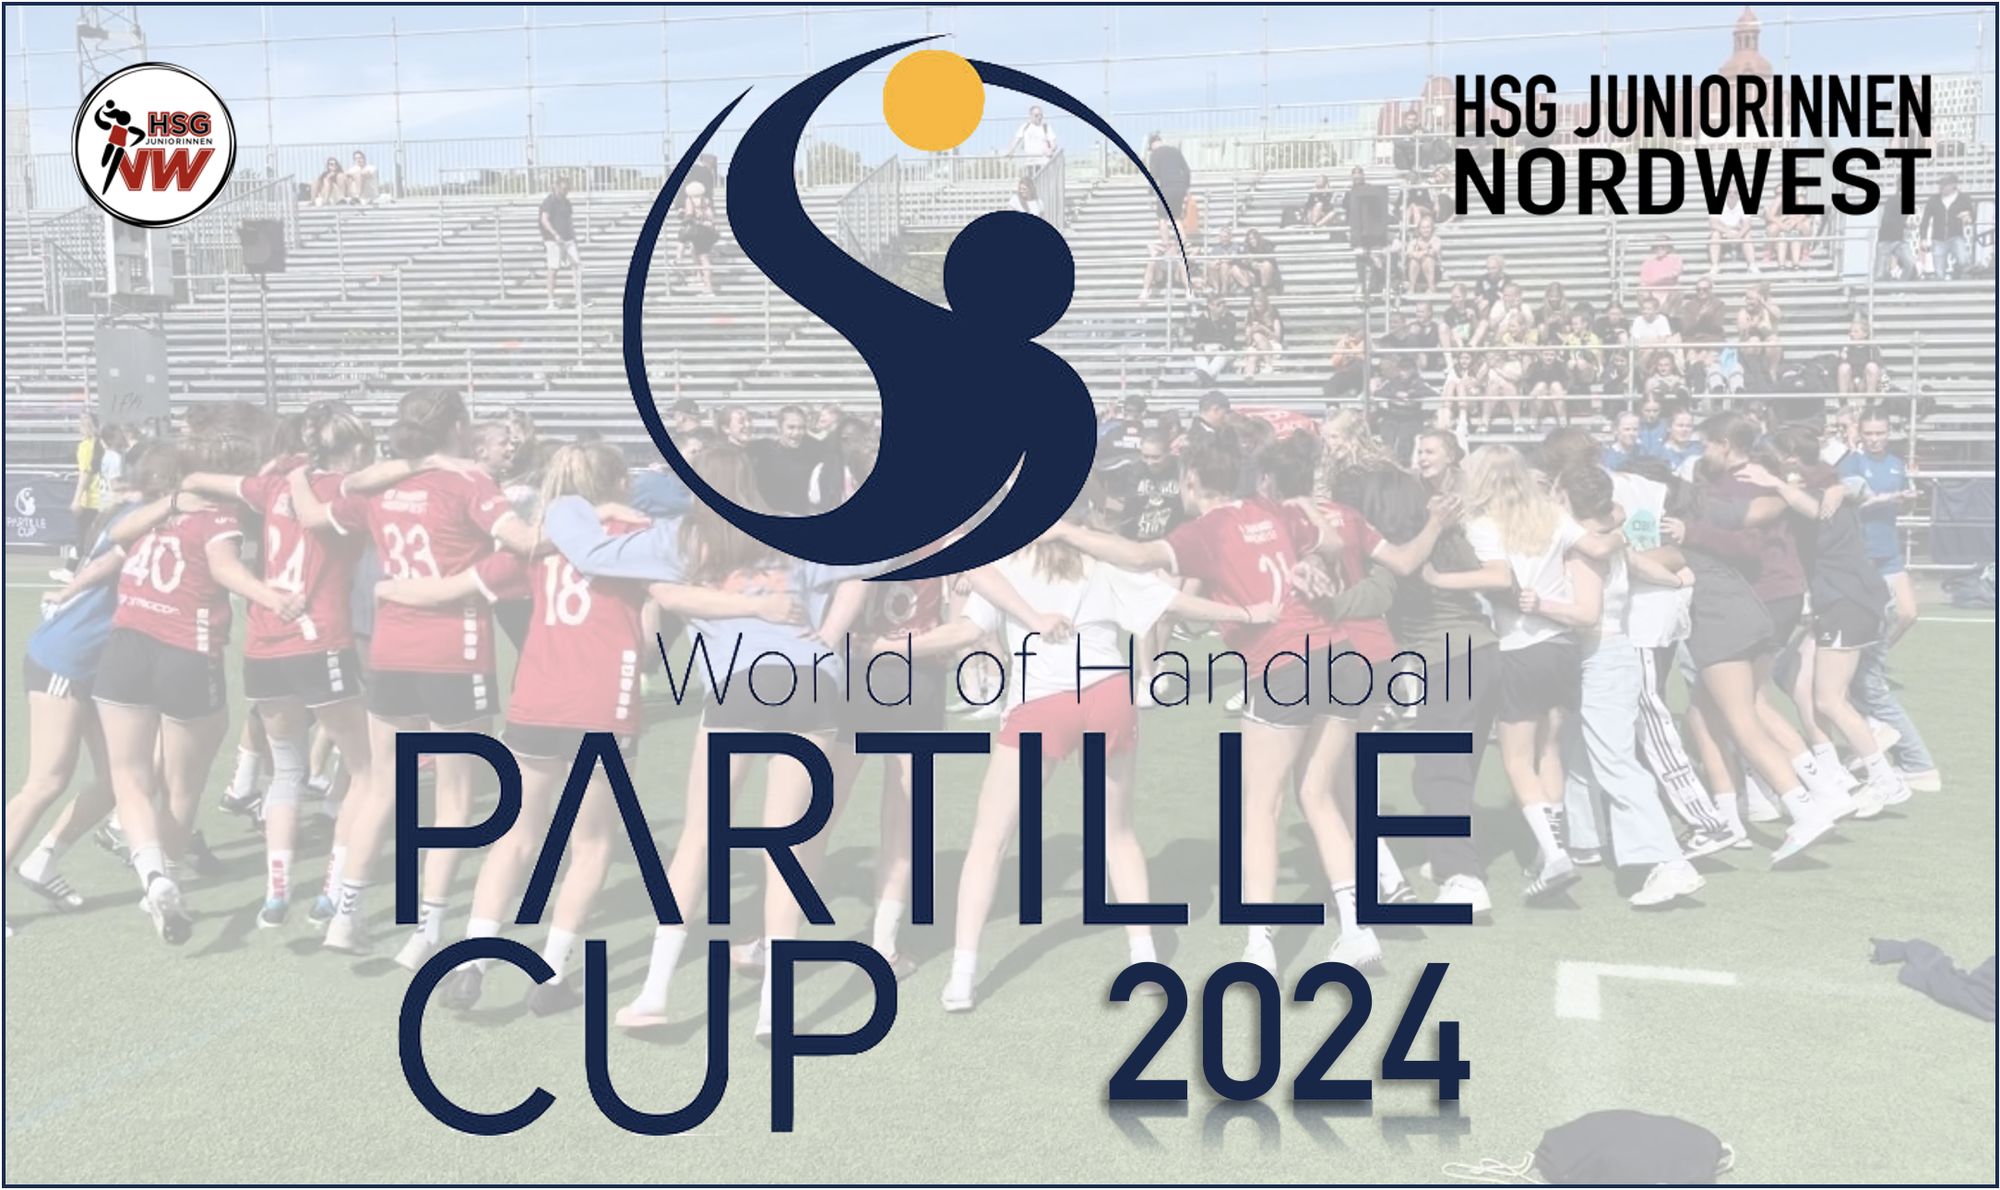 Partille Cup 2024: Anmeldung!